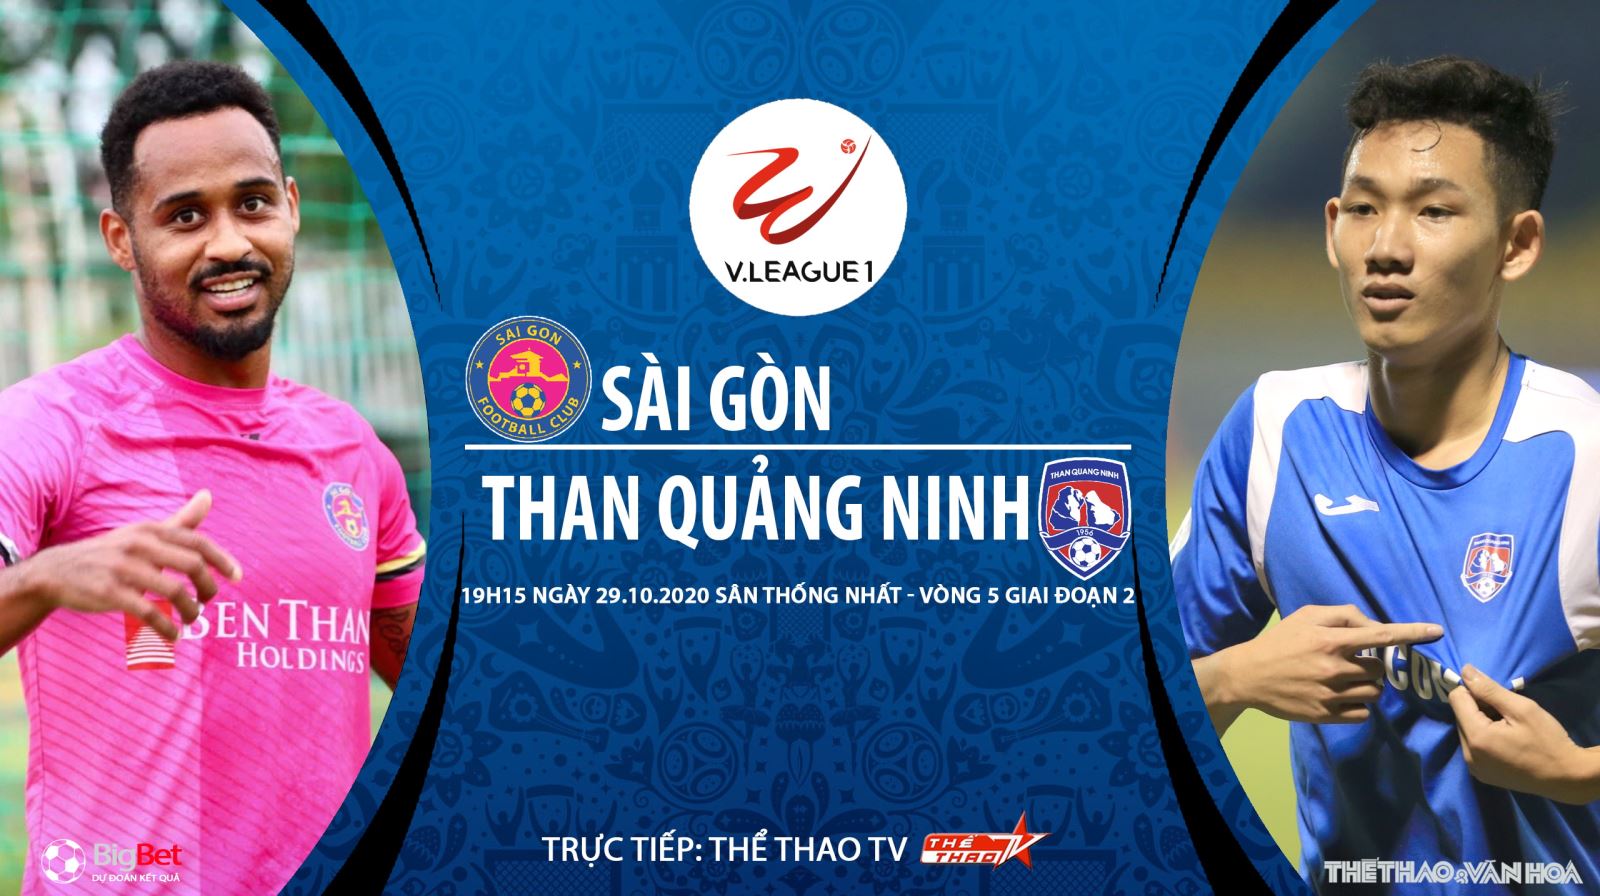 Nhận định bóng đá nhà cái. Sài Gòn vs Than Quảng Ninh. Trực tiếp bóng đá Việt Nam 2020